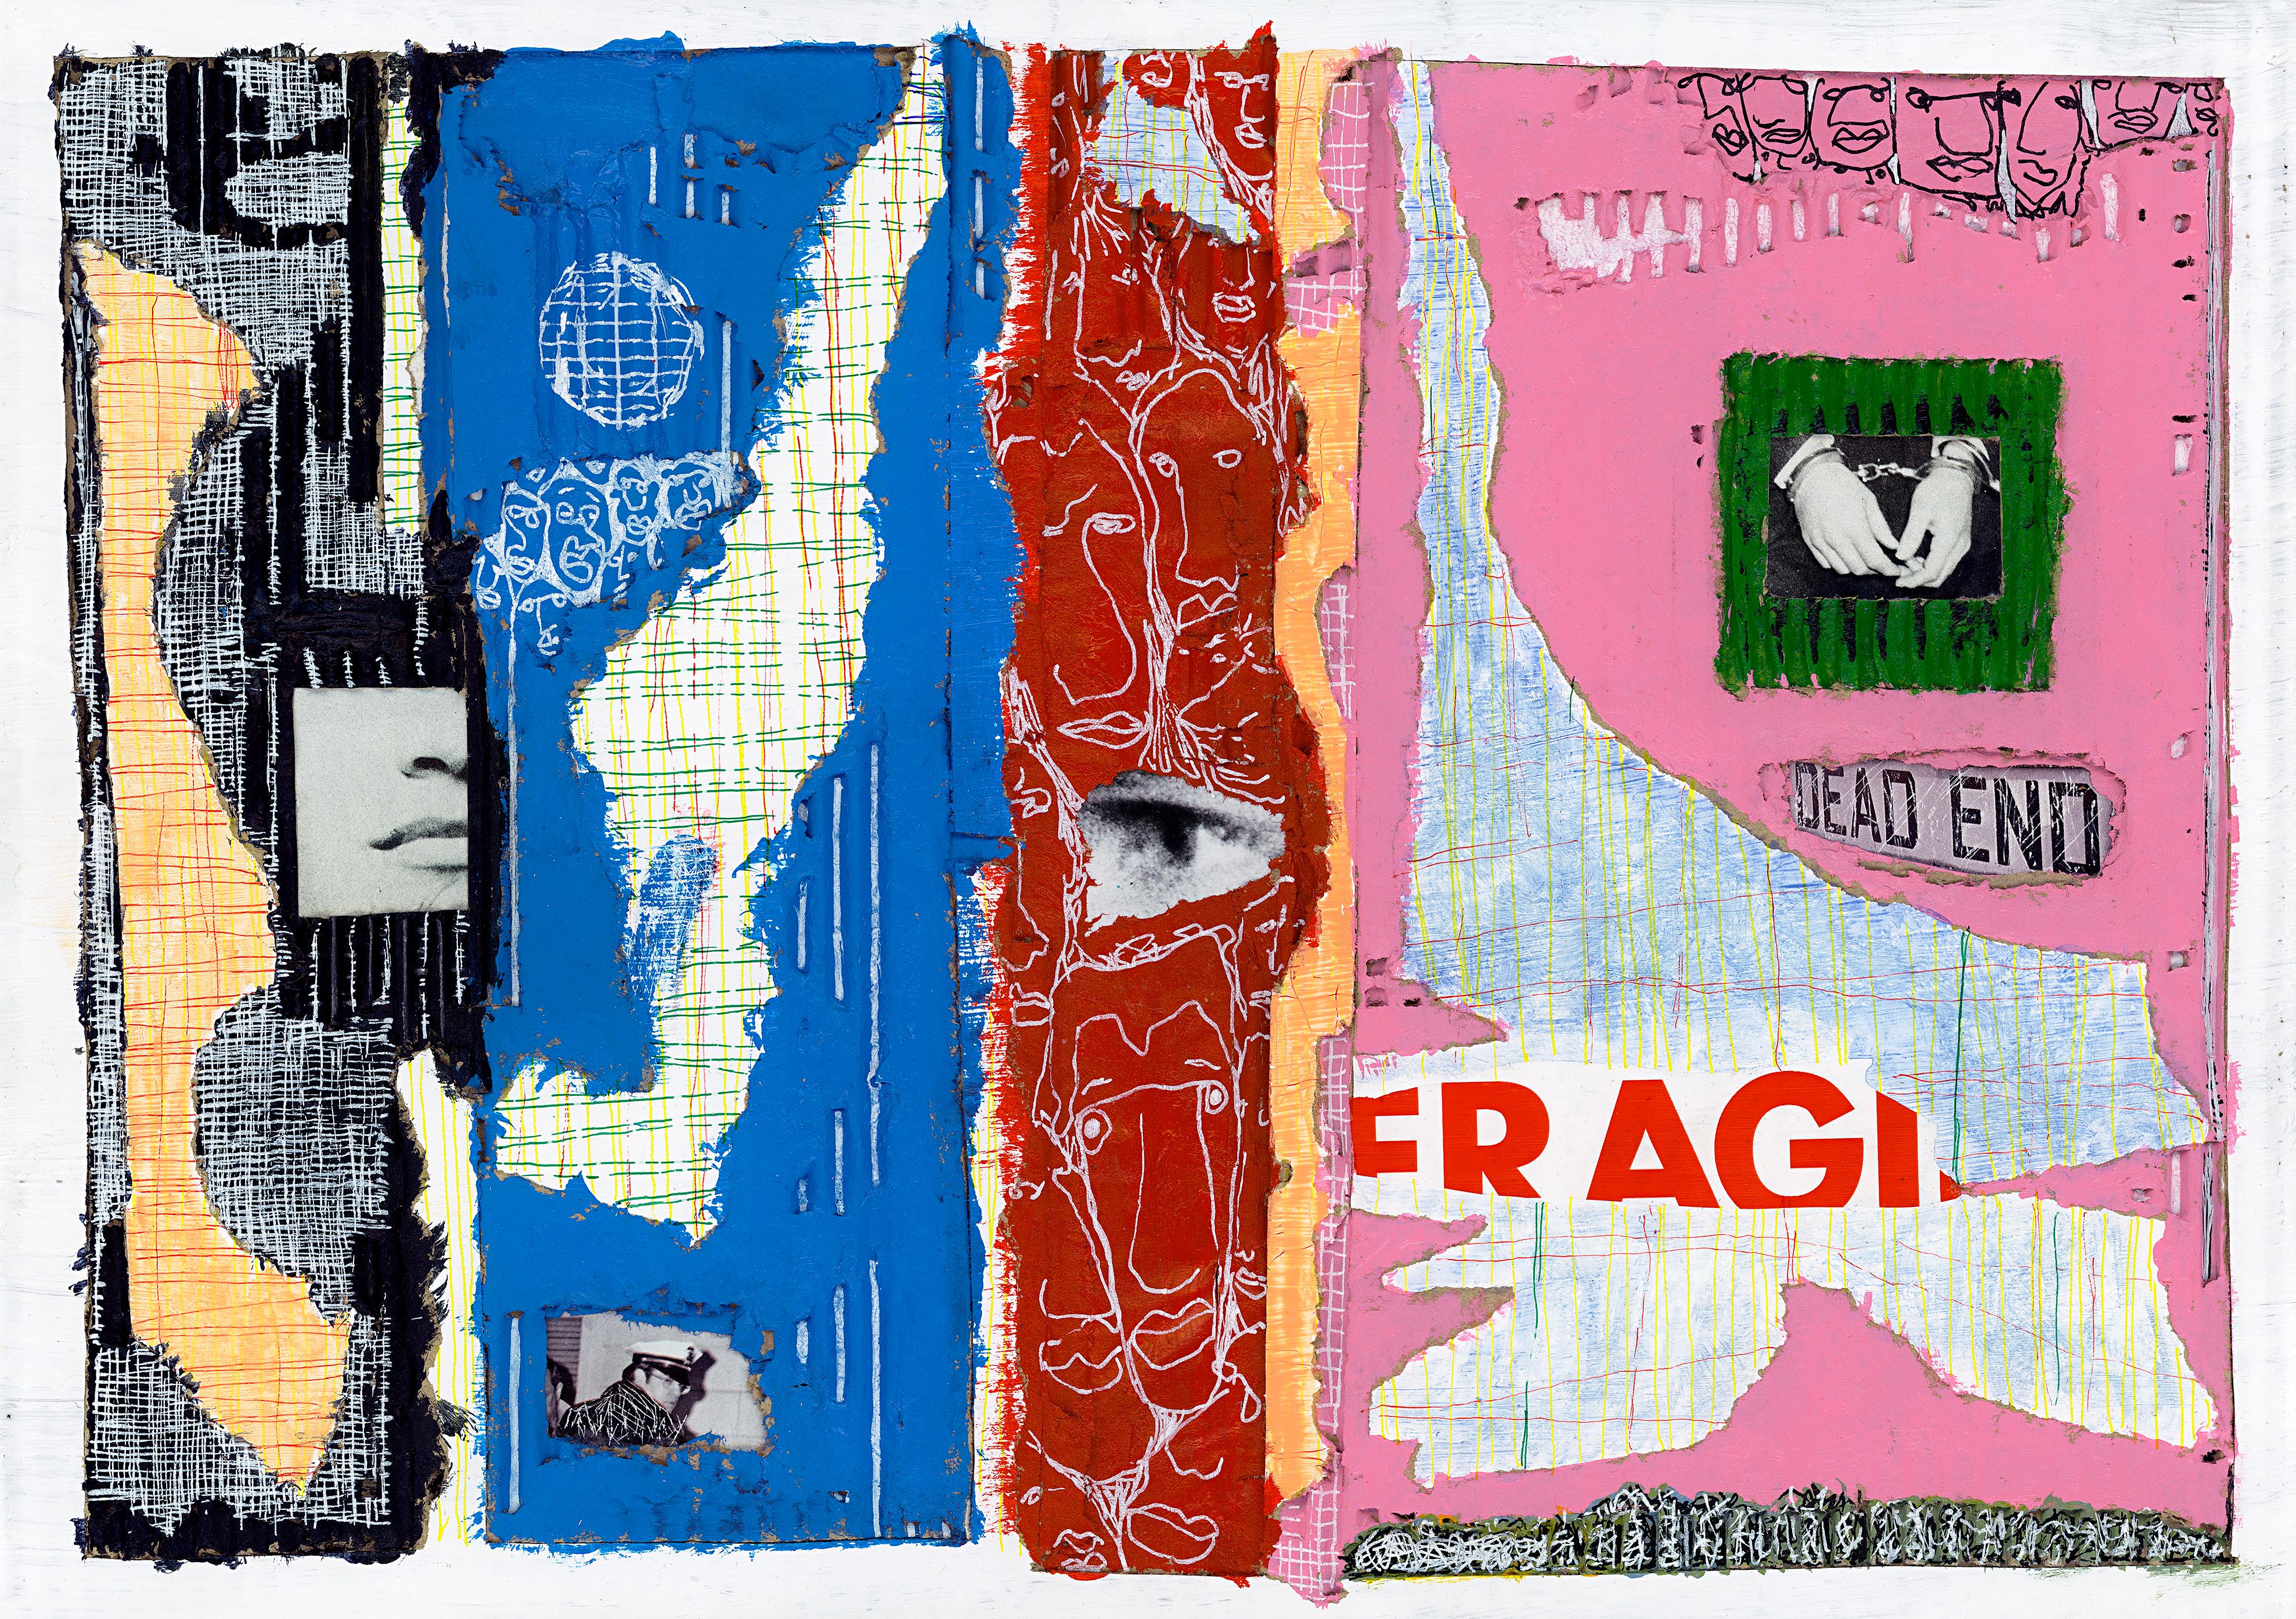 Acryl und Collage auf Karton

Fred Borghesi ist ein italienischer Künstler, der 1987 geboren wurde und in London, Großbritannien, lebt und arbeitet. Er ist vor allem ein multidisziplinärer Künstler, der ständig zwischen den Medien wechselt und sich